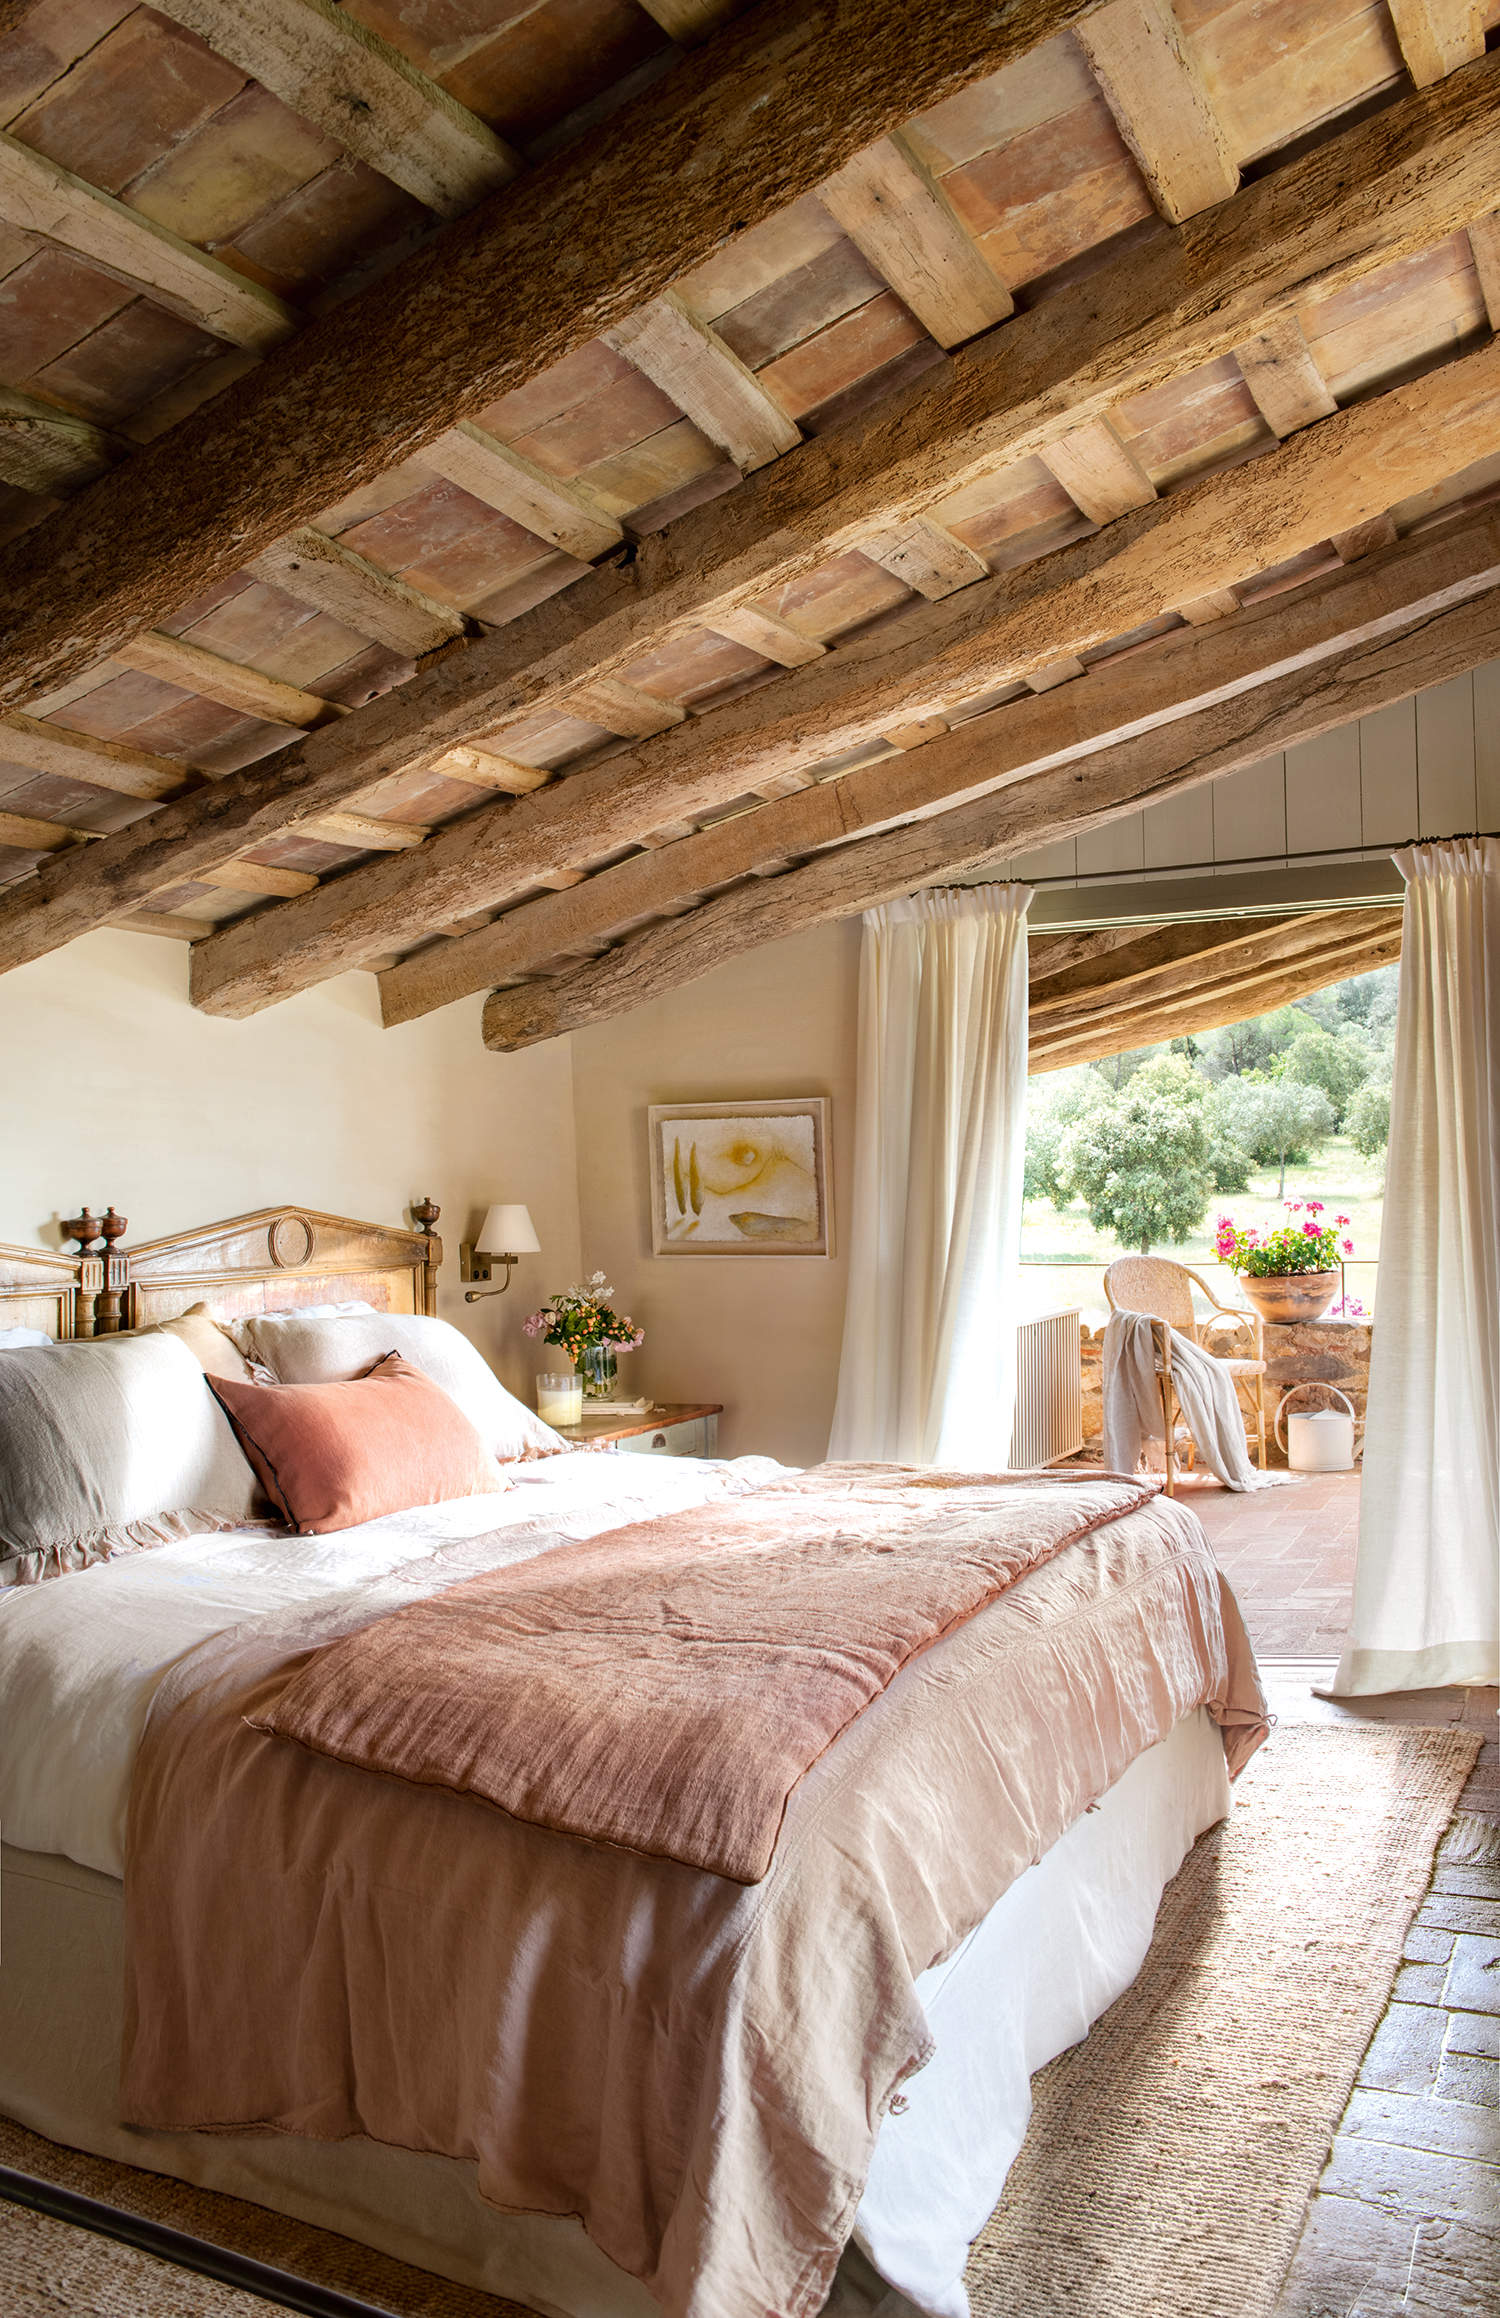 Dormitorio rústico con terraza, con vigas de madera, suelos de barro, alfombra de yute